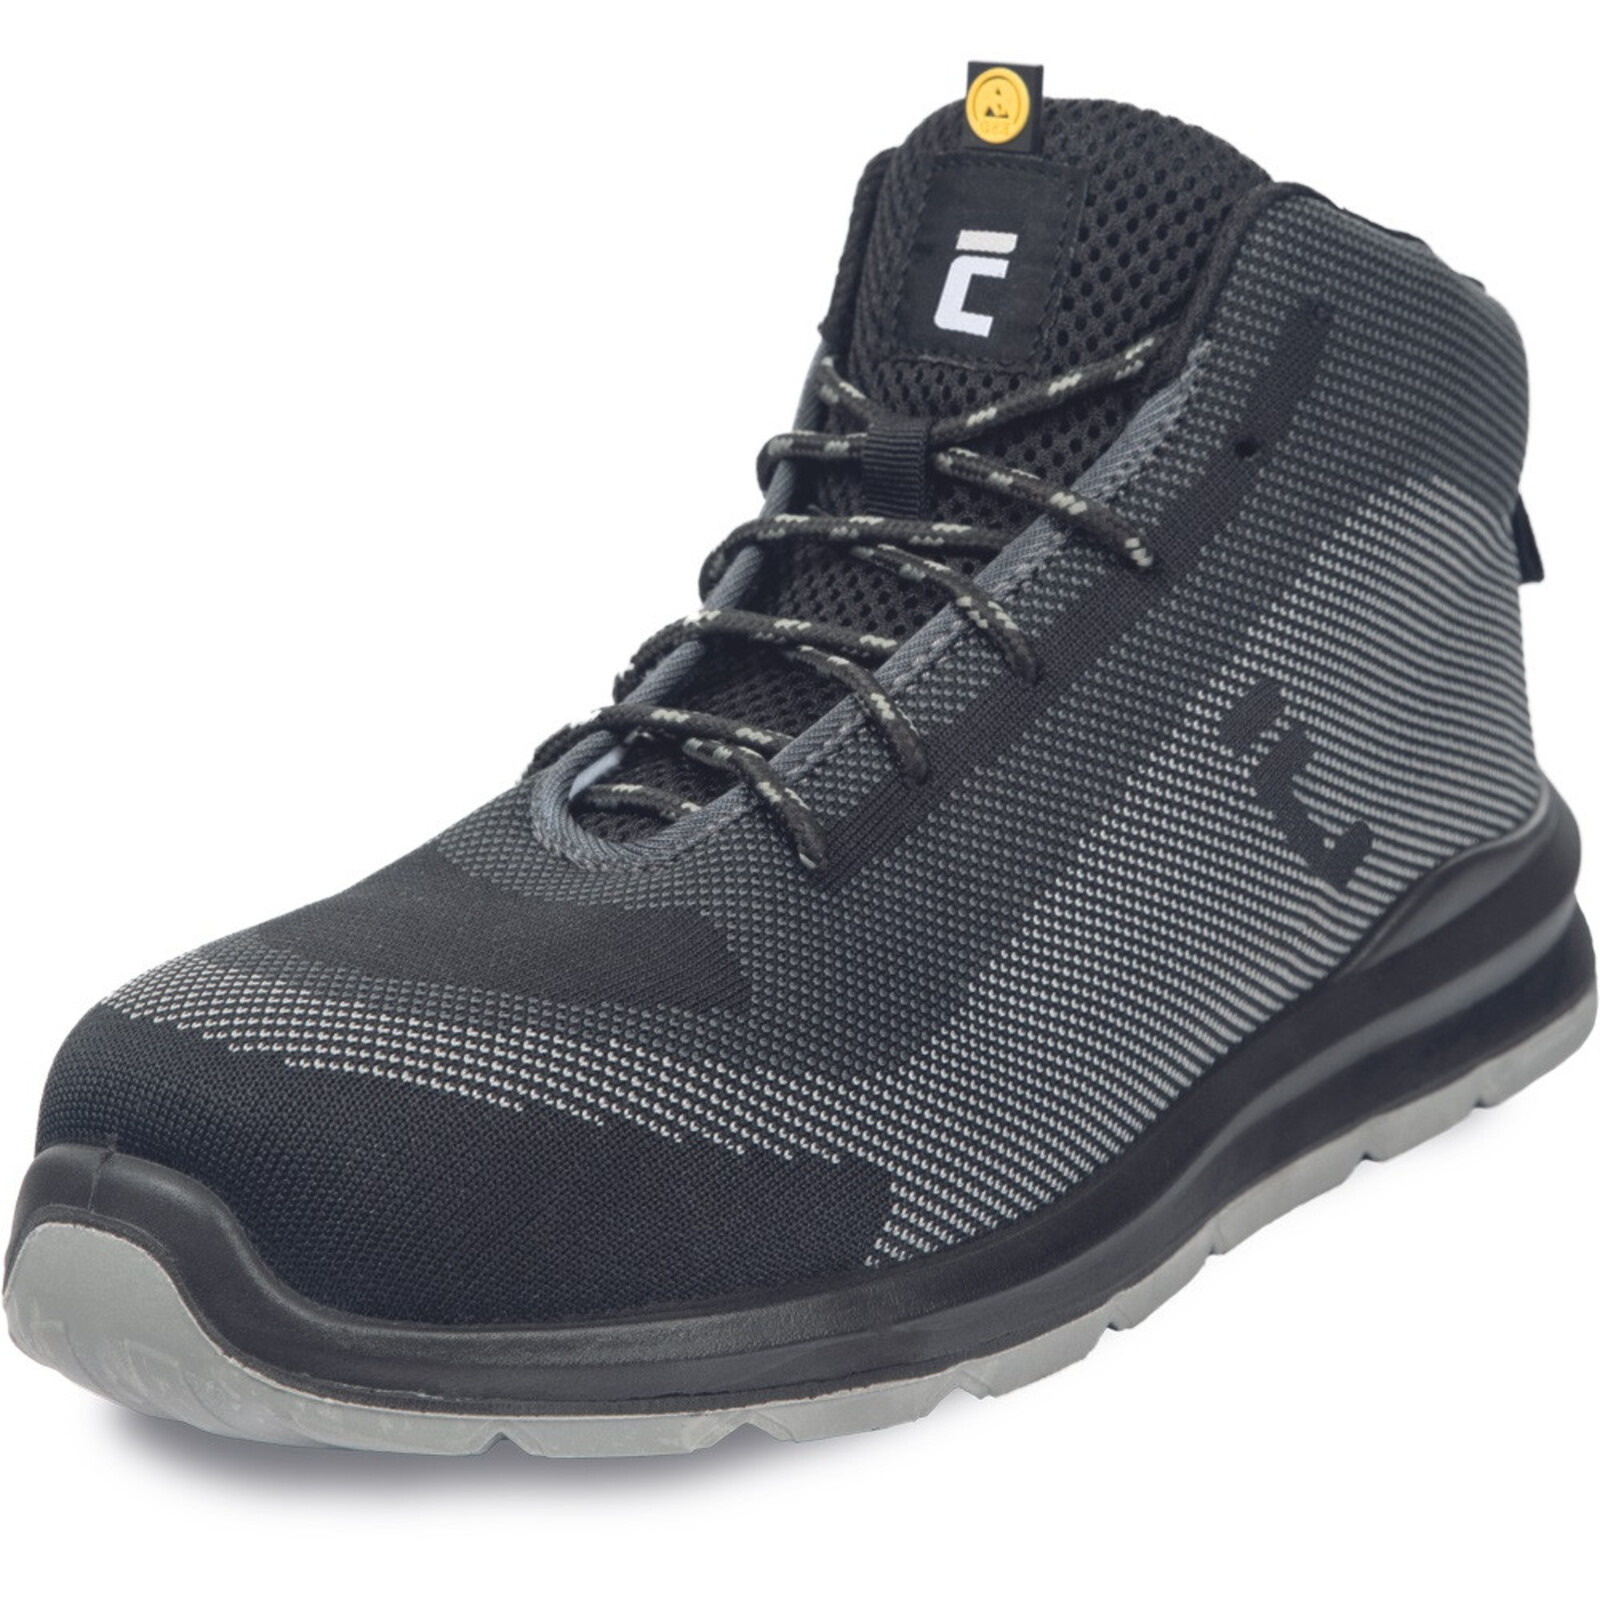 Bezpečnostná členková obuv Cerva Vadorros S1P MF ESD SRC - veľkosť: 44, farba: sivá/čierna